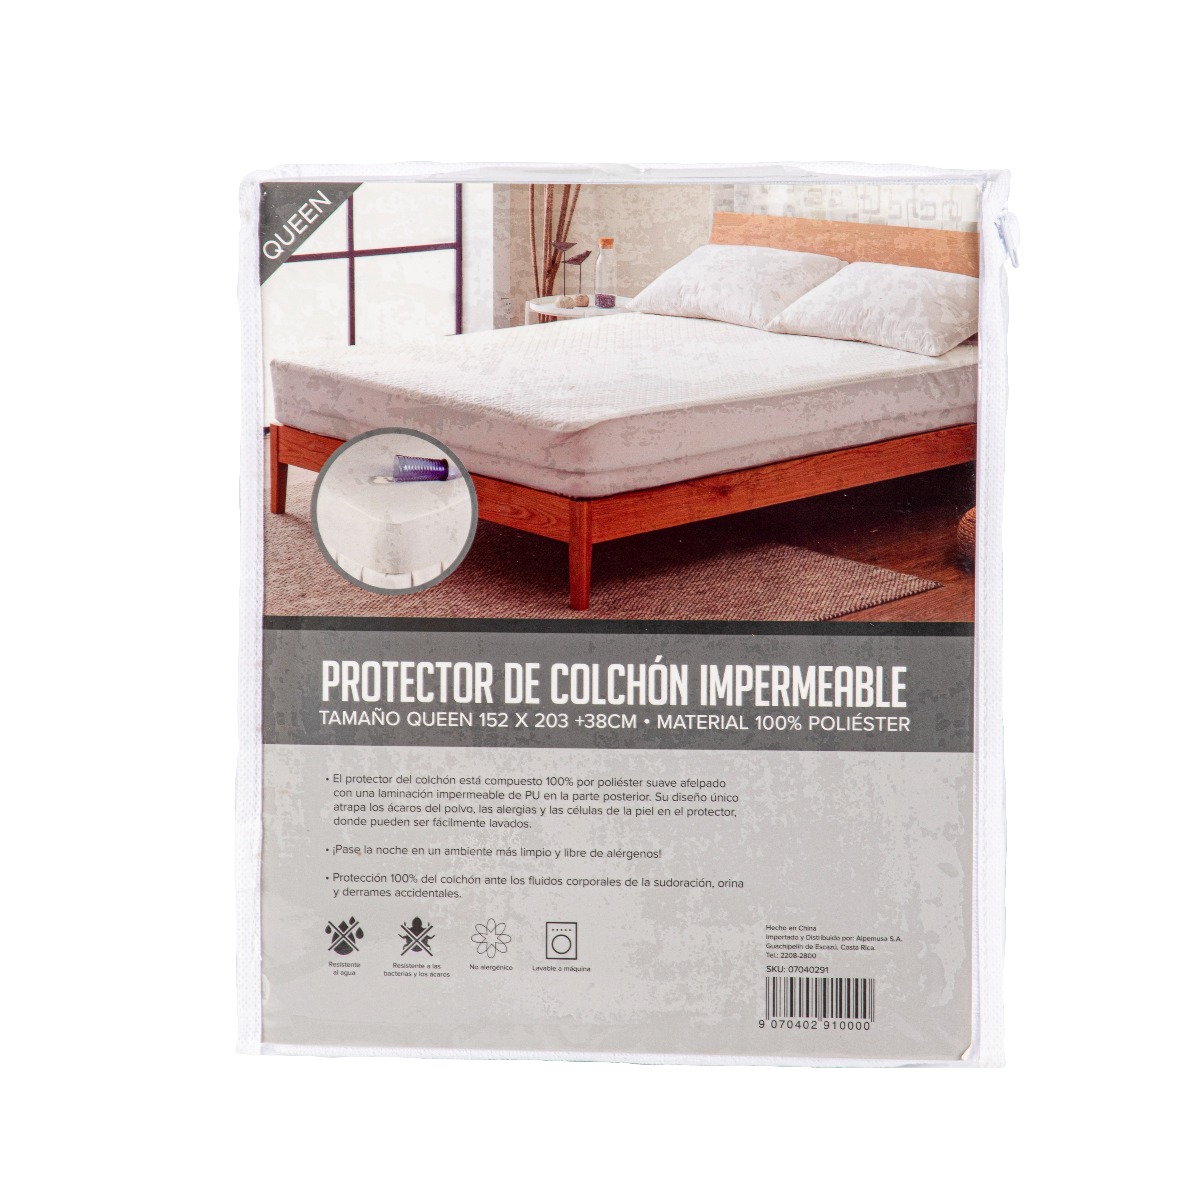 Protector Impermeable De Colchon – Tiendas Relax